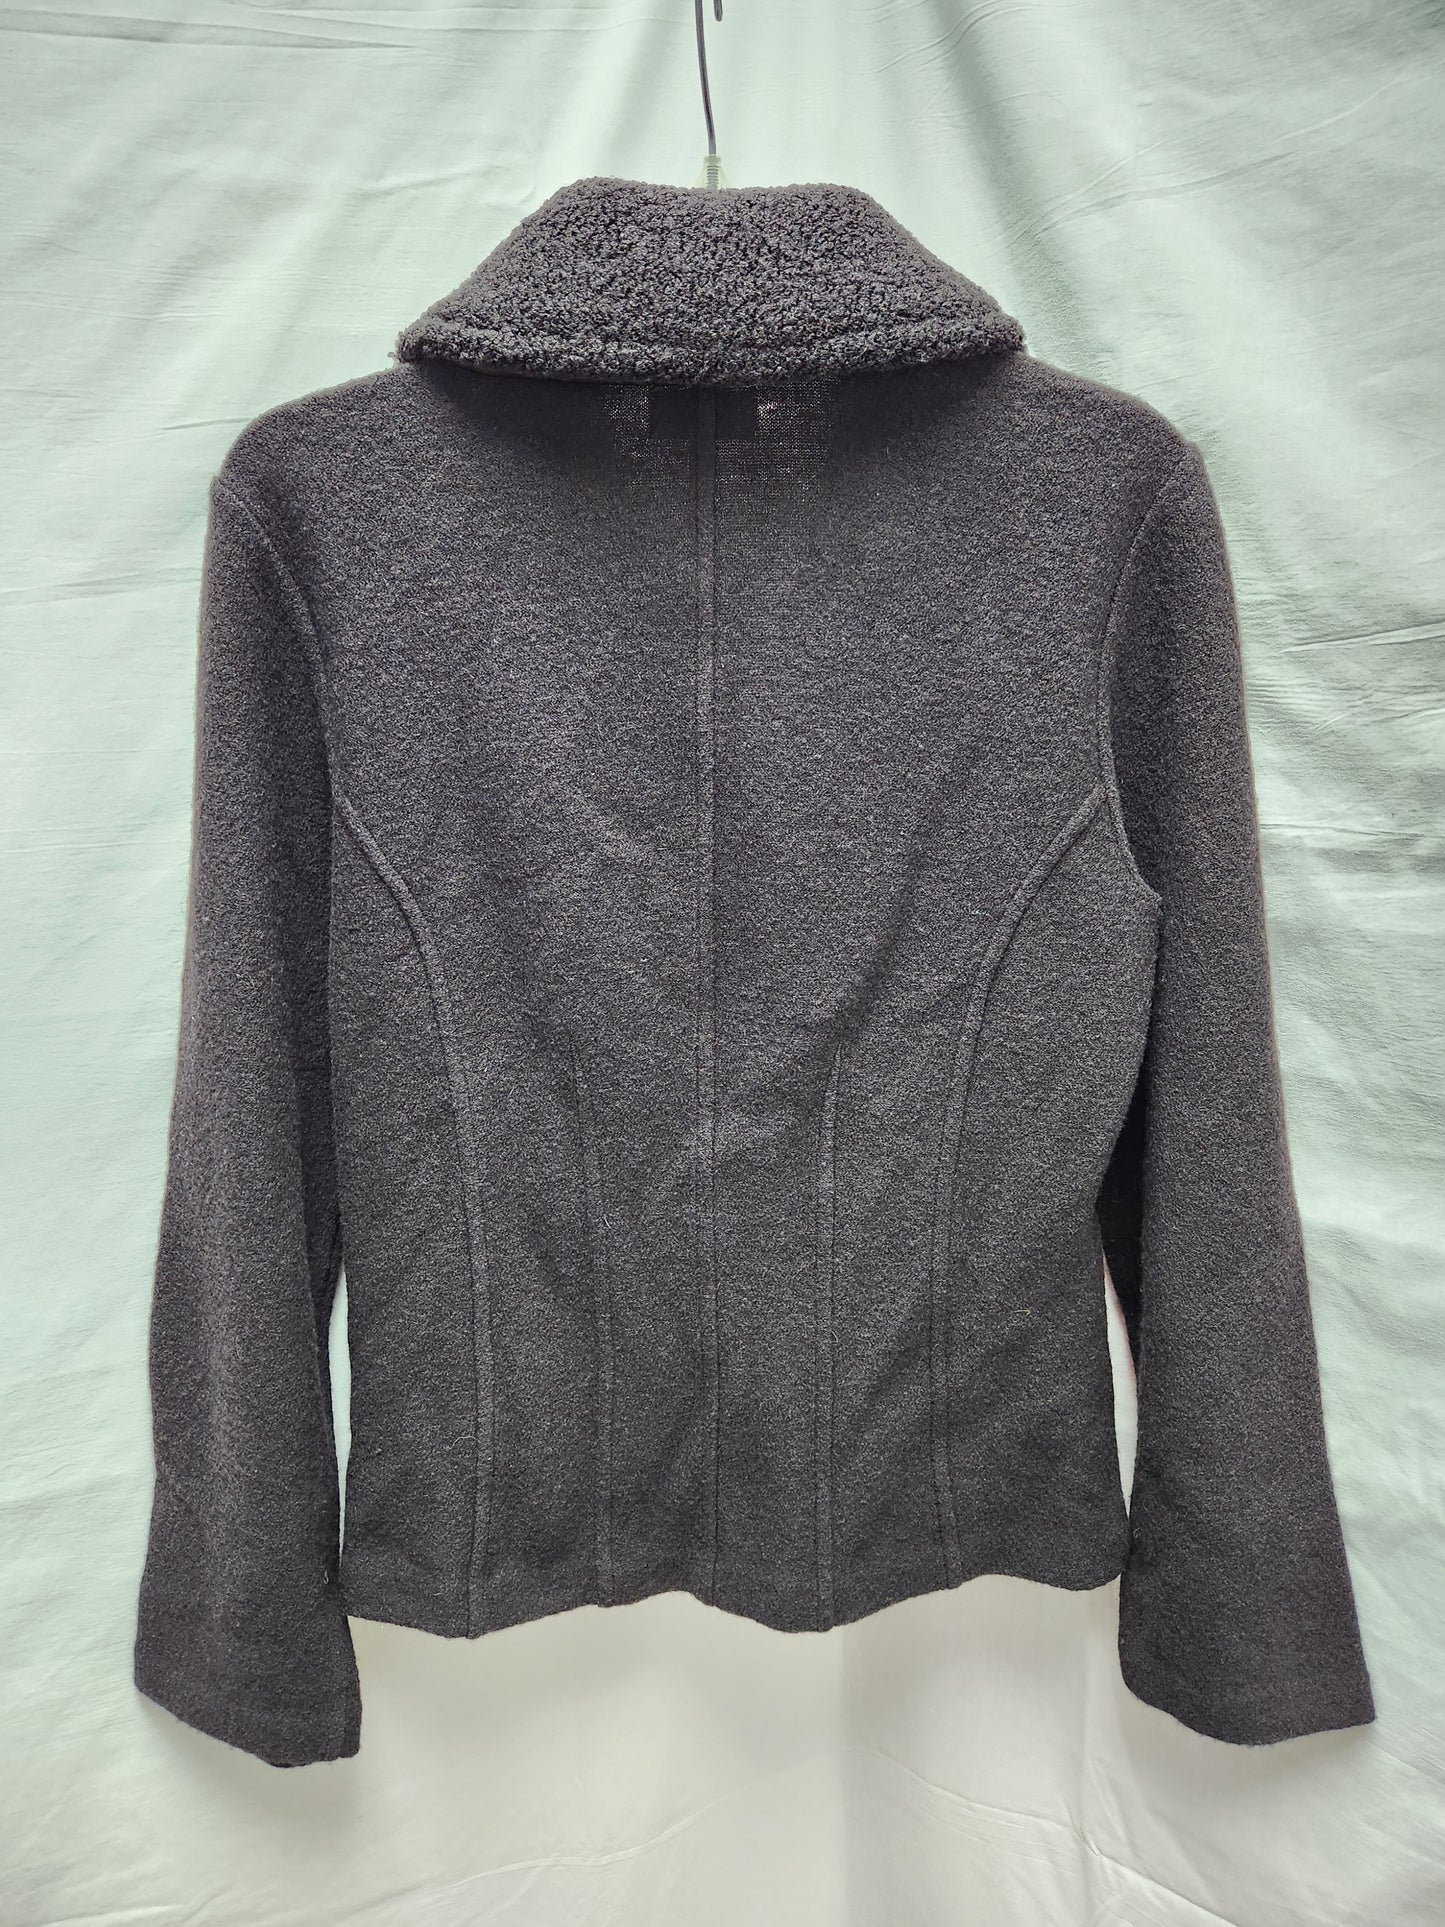 KALIKO black 100% Wool Blazer Jacket - 6